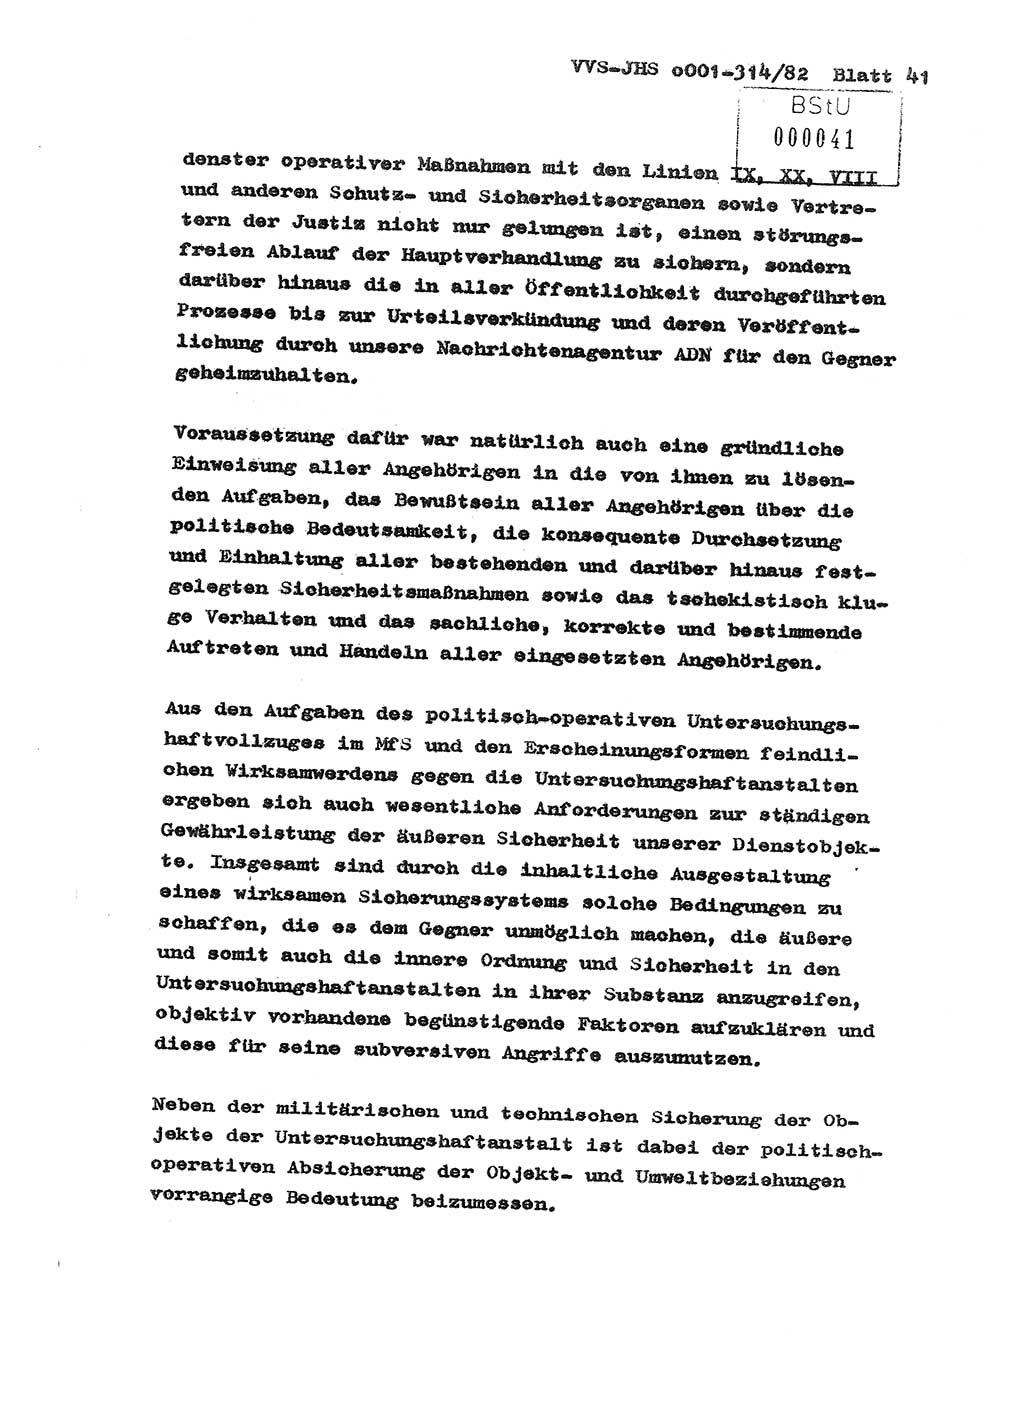 Diplomarbeit Hauptmann Wolfgang Schröder (Abt. ⅩⅣ), Ministerium für Staatssicherheit (MfS) [Deutsche Demokratische Republik (DDR)], Juristische Hochschule (JHS), Vertrauliche Verschlußsache (VVS) o001-314/82, Potsdam 1982, Seite 41 (Dipl.-Arb. MfS DDR JHS VVS o001-314/82 1982, S. 41)